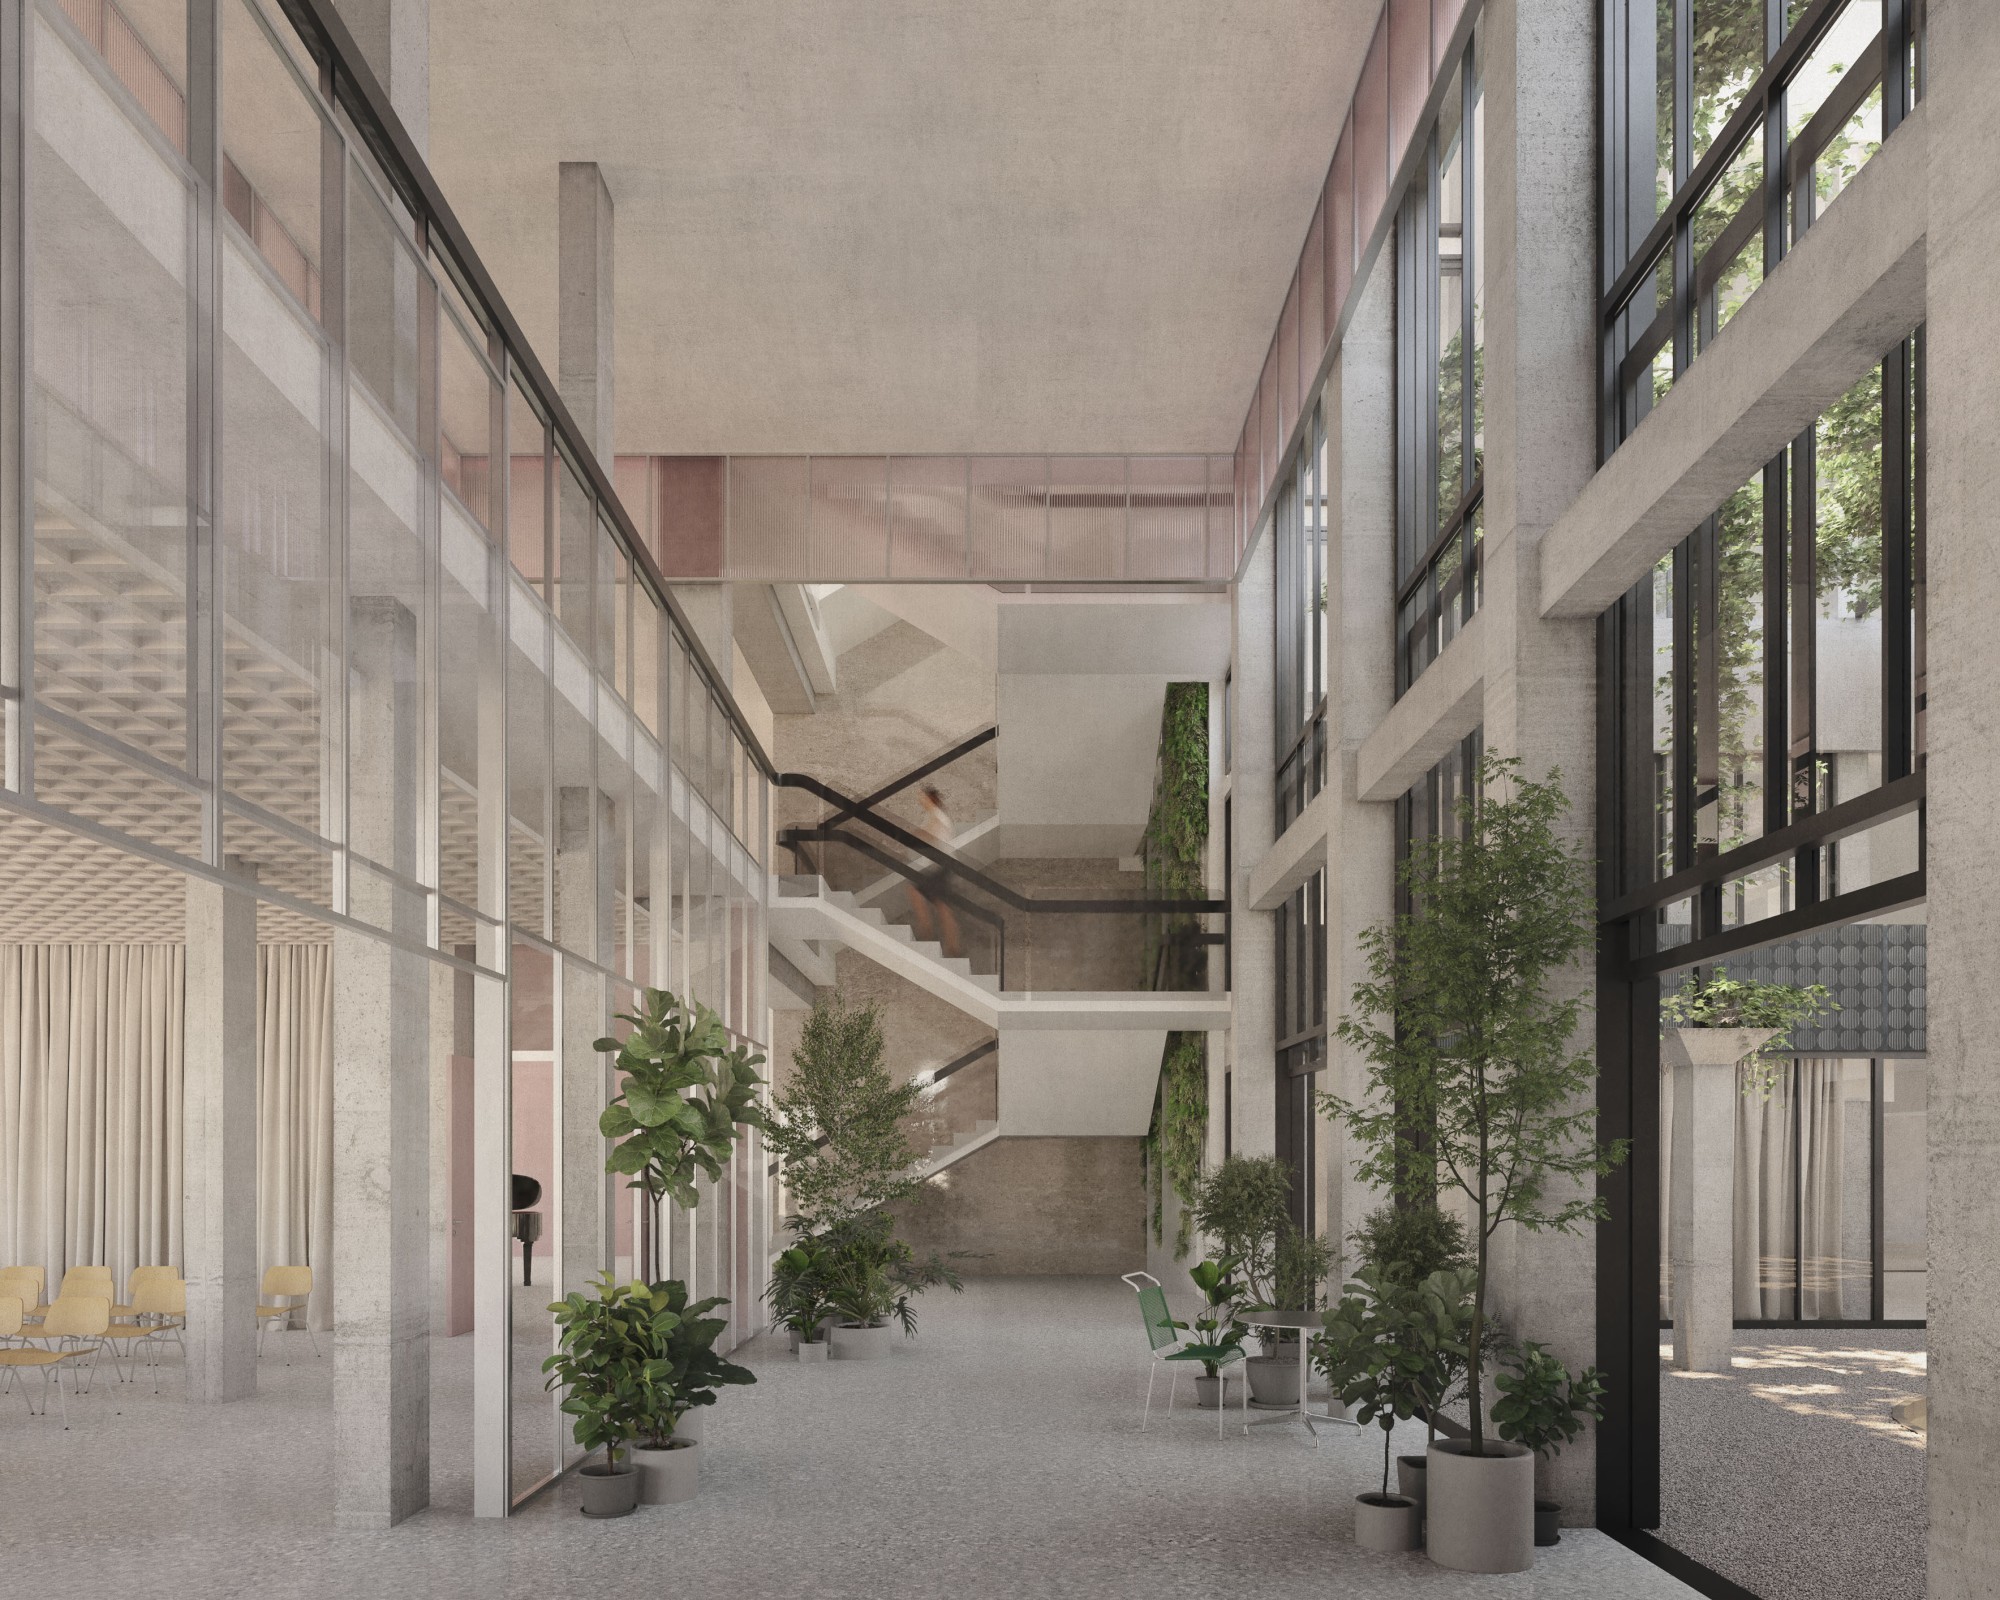 Visualisation du projet de rénovation de l'ambassade suisse de Londres. La structure existante sera prise en compte lors des transformations de l'édifice.